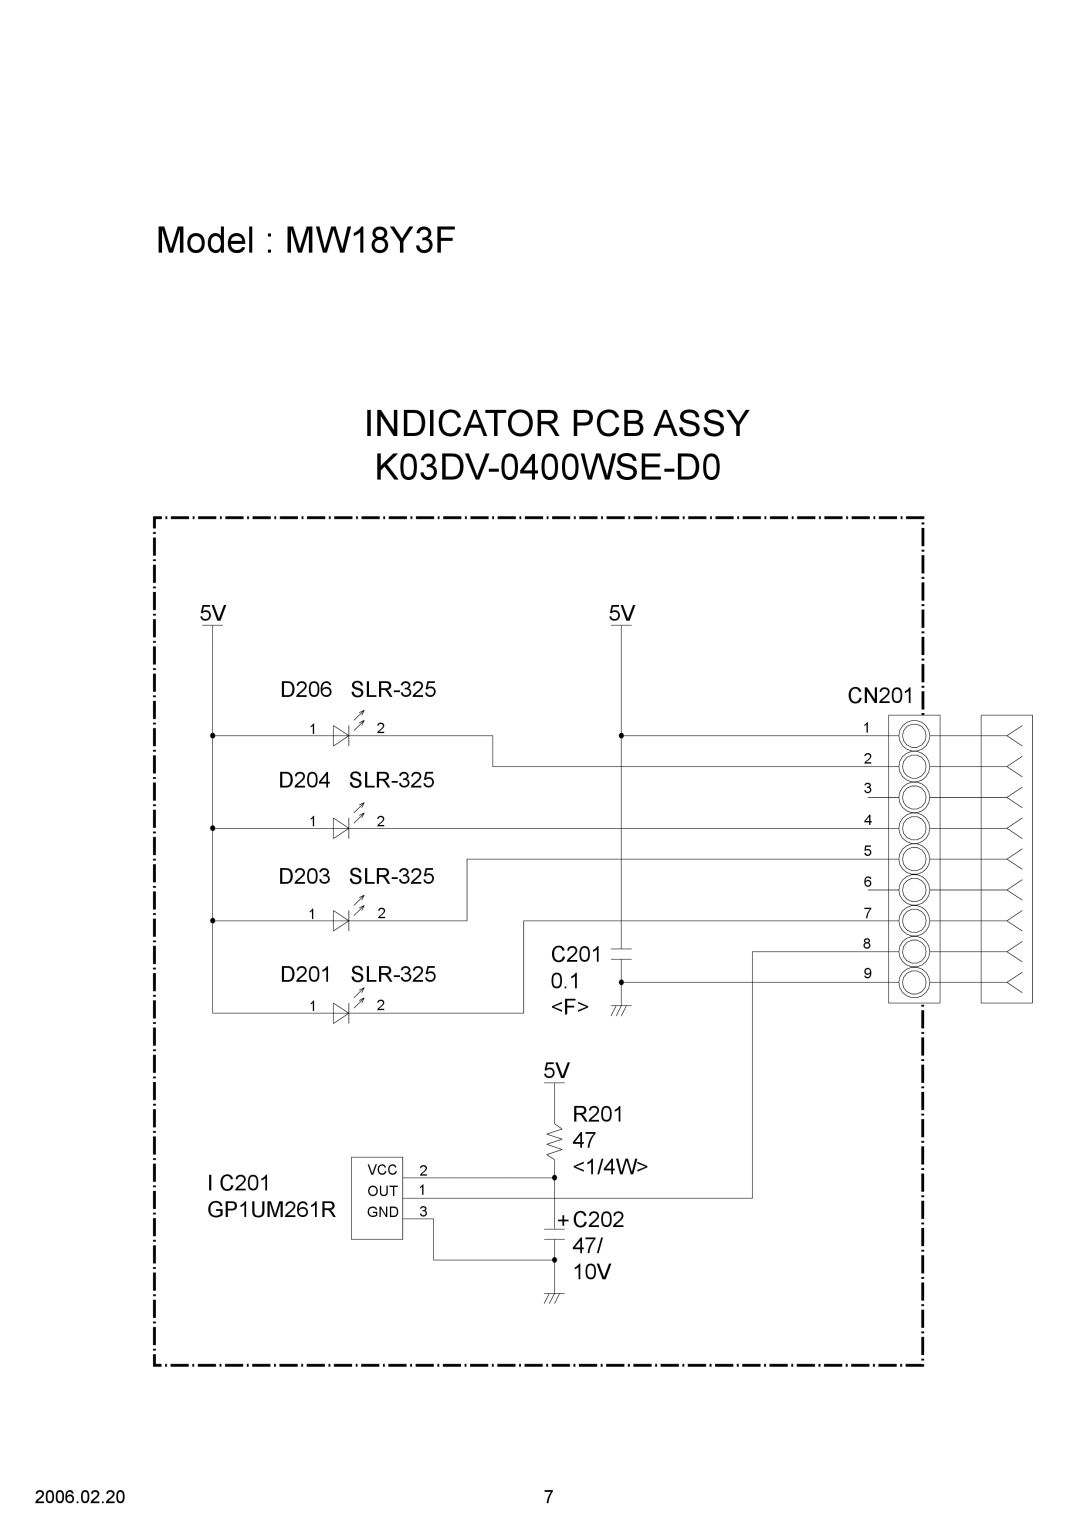 Friedrich MR18Y3F specifications Model MW18Y3F INDICATOR PCB ASSY, K03DV-0400WSE-D0 